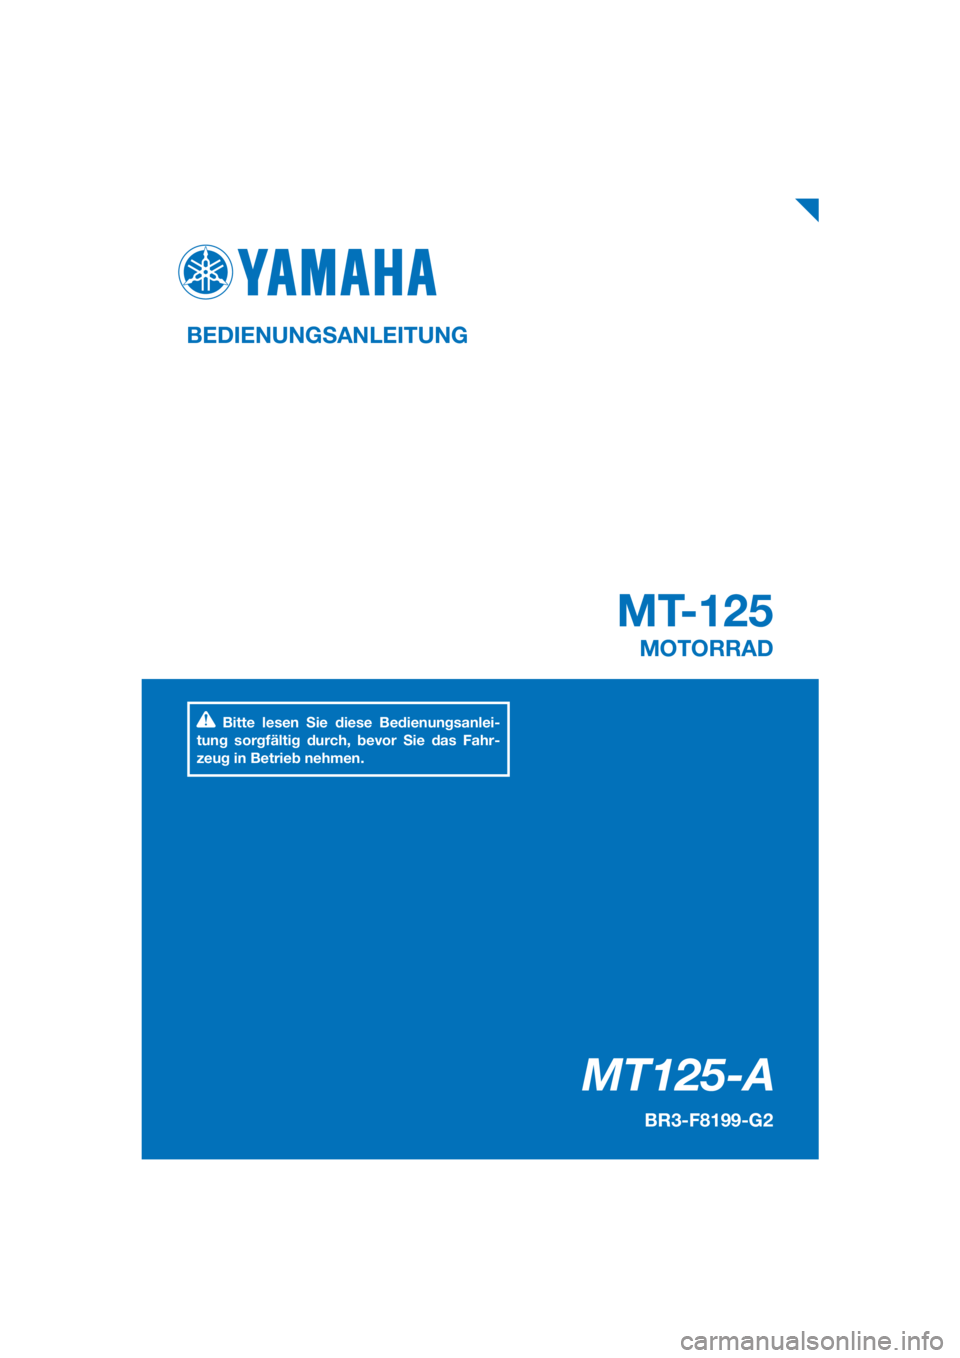 YAMAHA MT-125 2017  Betriebsanleitungen (in German) PANTONE285C
MT125-A
MT-125
BEDIENUNGSANLEITUNG
BR3-F8199-G2
MOTORRAD
Bitte lesen Sie diese Bedienungsanlei-
tung sorgfältig durch, bevor Sie das Fahr-
zeug in Betrieb nehmen.
[German  (G)] 